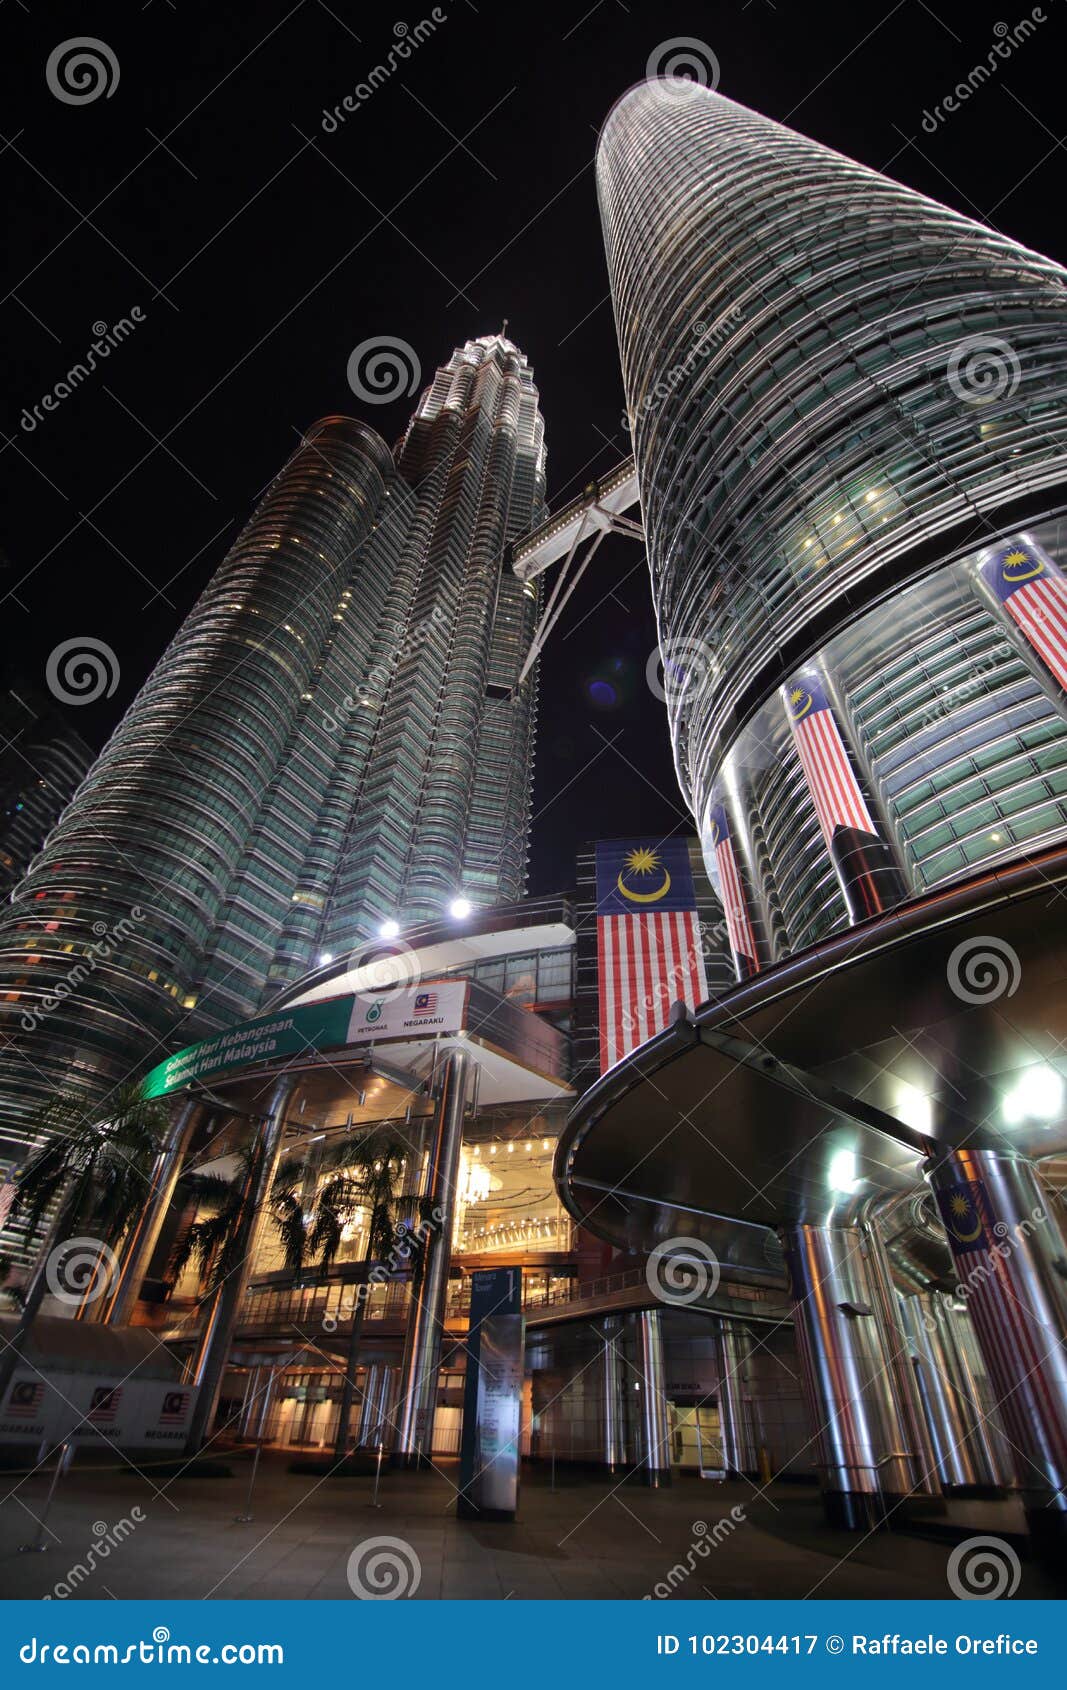 De torens van Petronas bij nacht. De Tweelingtorens van Petronas in Kuala Lumpur, Maleisië, bij nacht